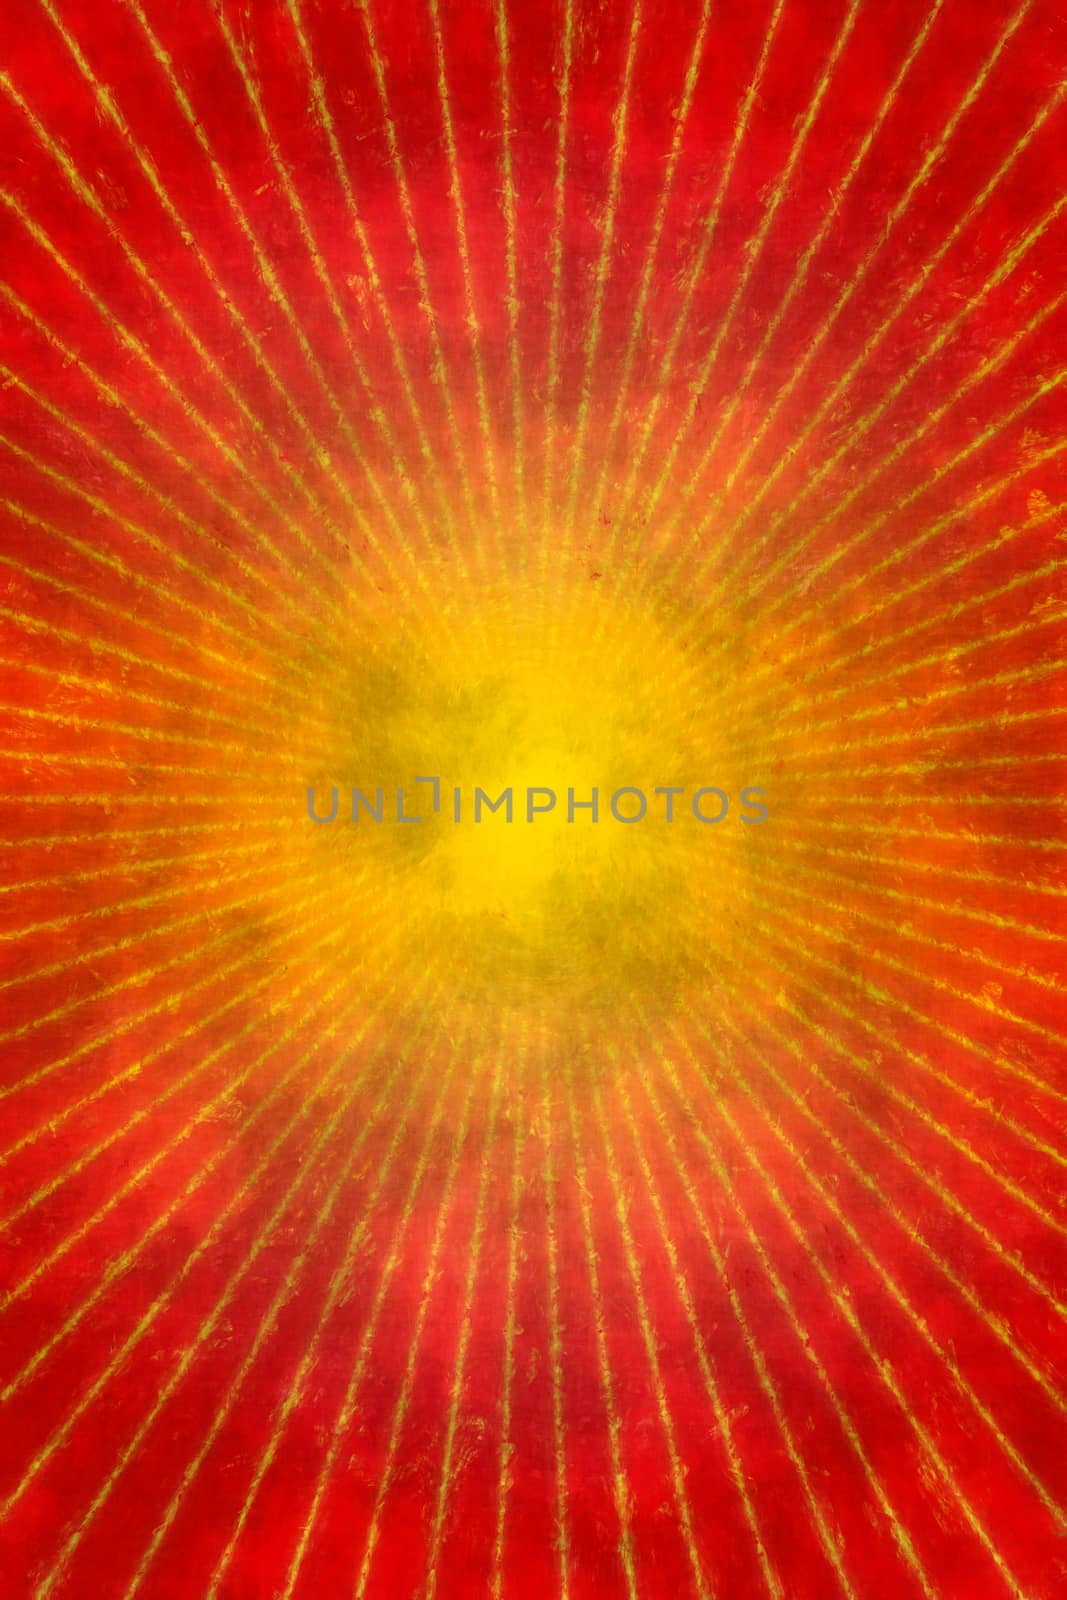 Red grunge sunburst background or texture by Attila